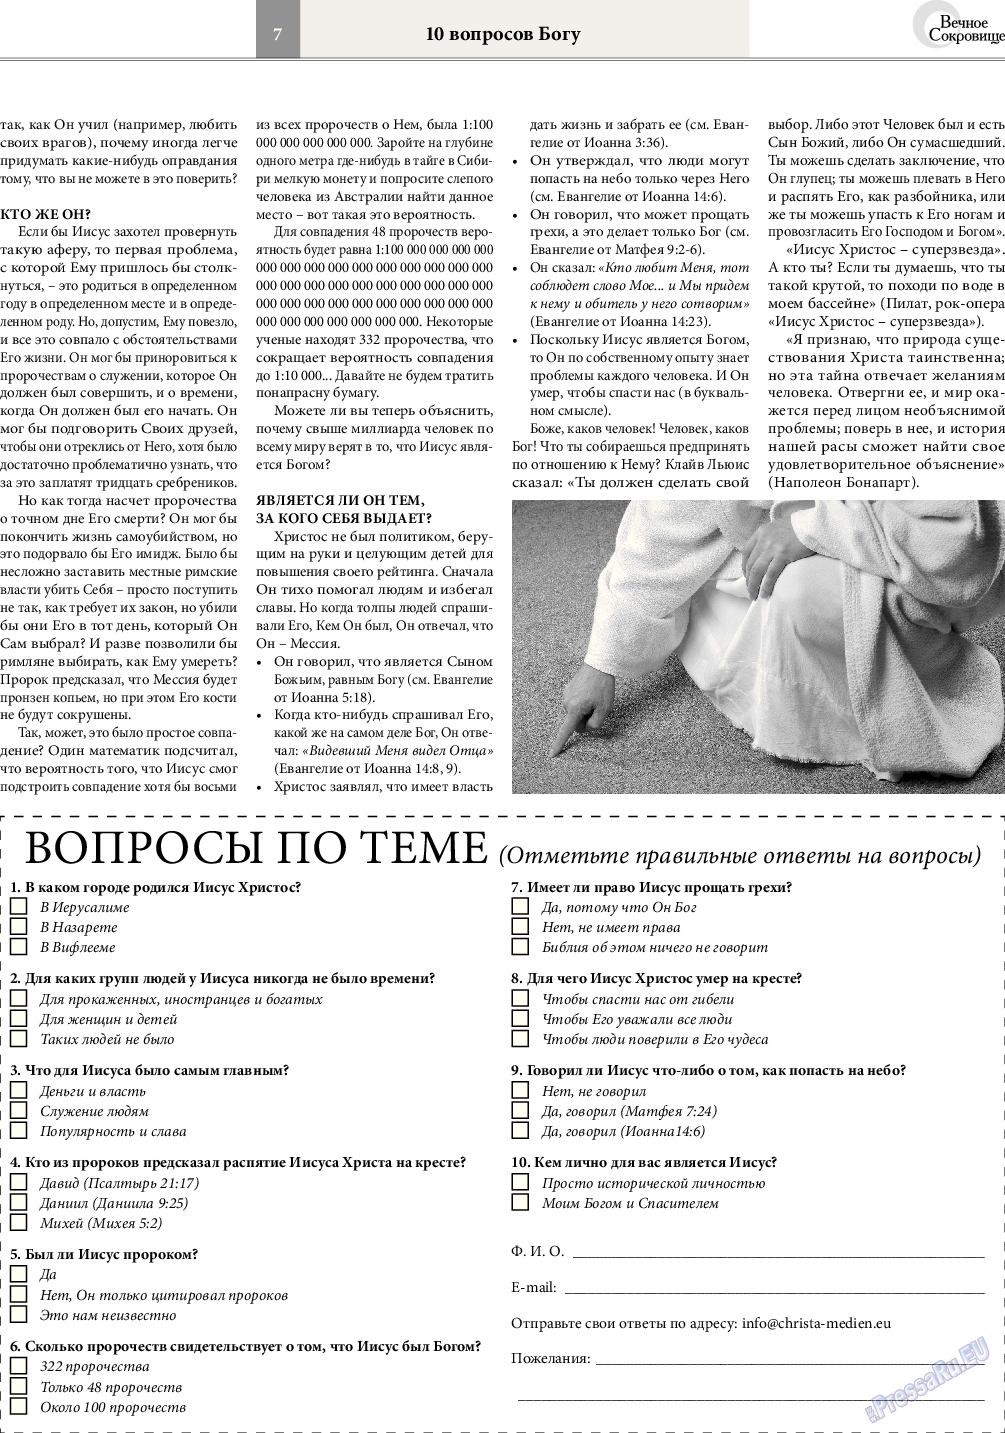 Вечное сокровище, газета. 2016 №1 стр.7